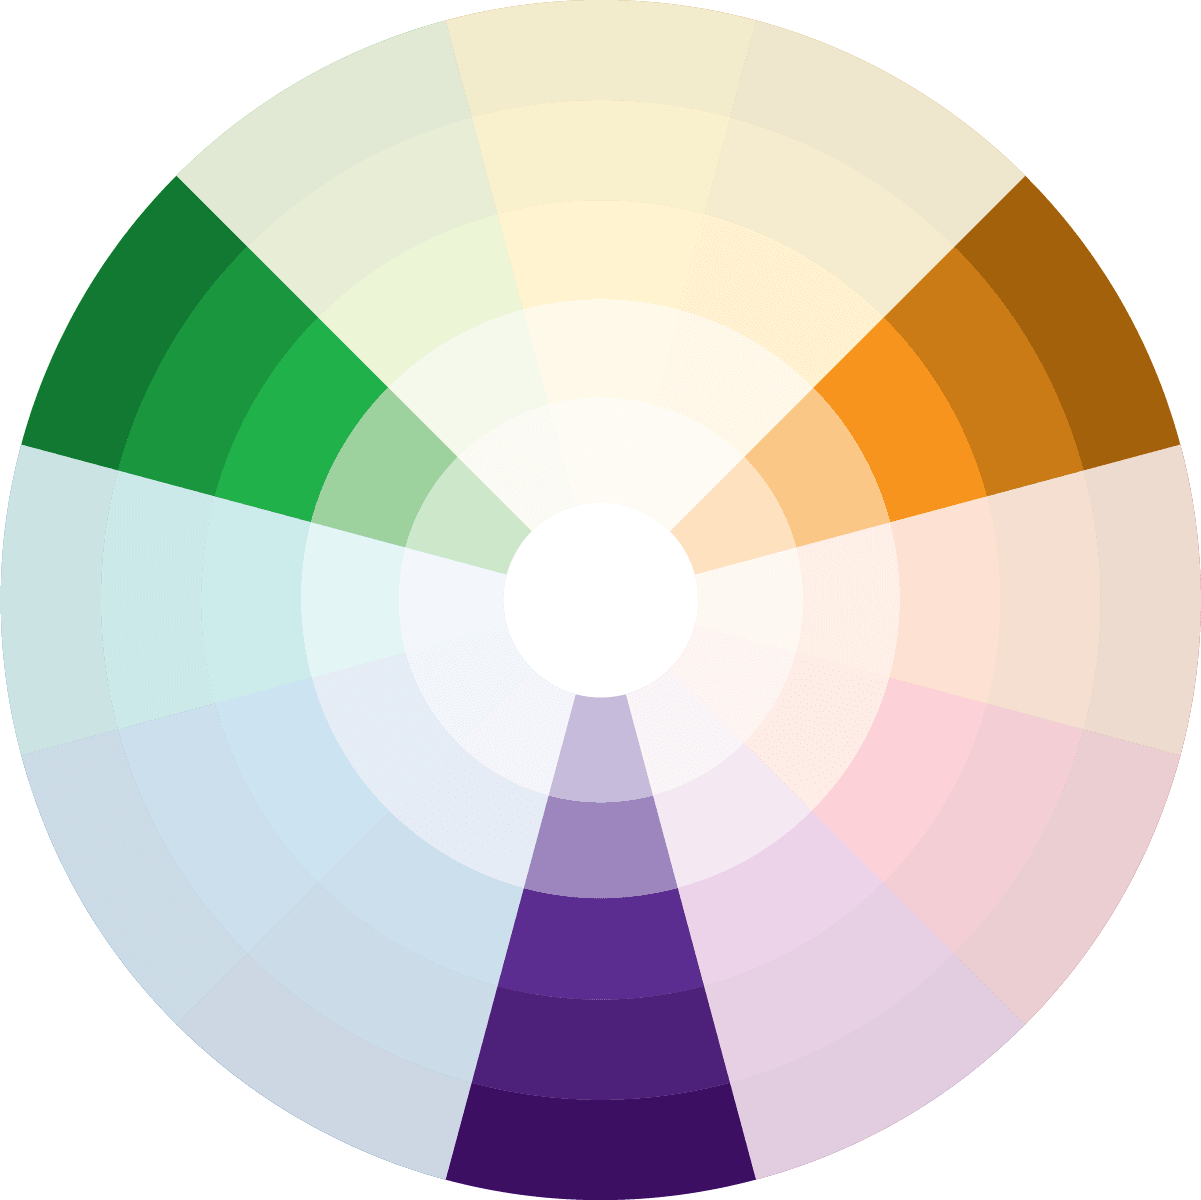 Tríade são 3 cores do Círculo Cromático que formam um triângulo, como o verde, laranja e roxo das tintas Suvinil.